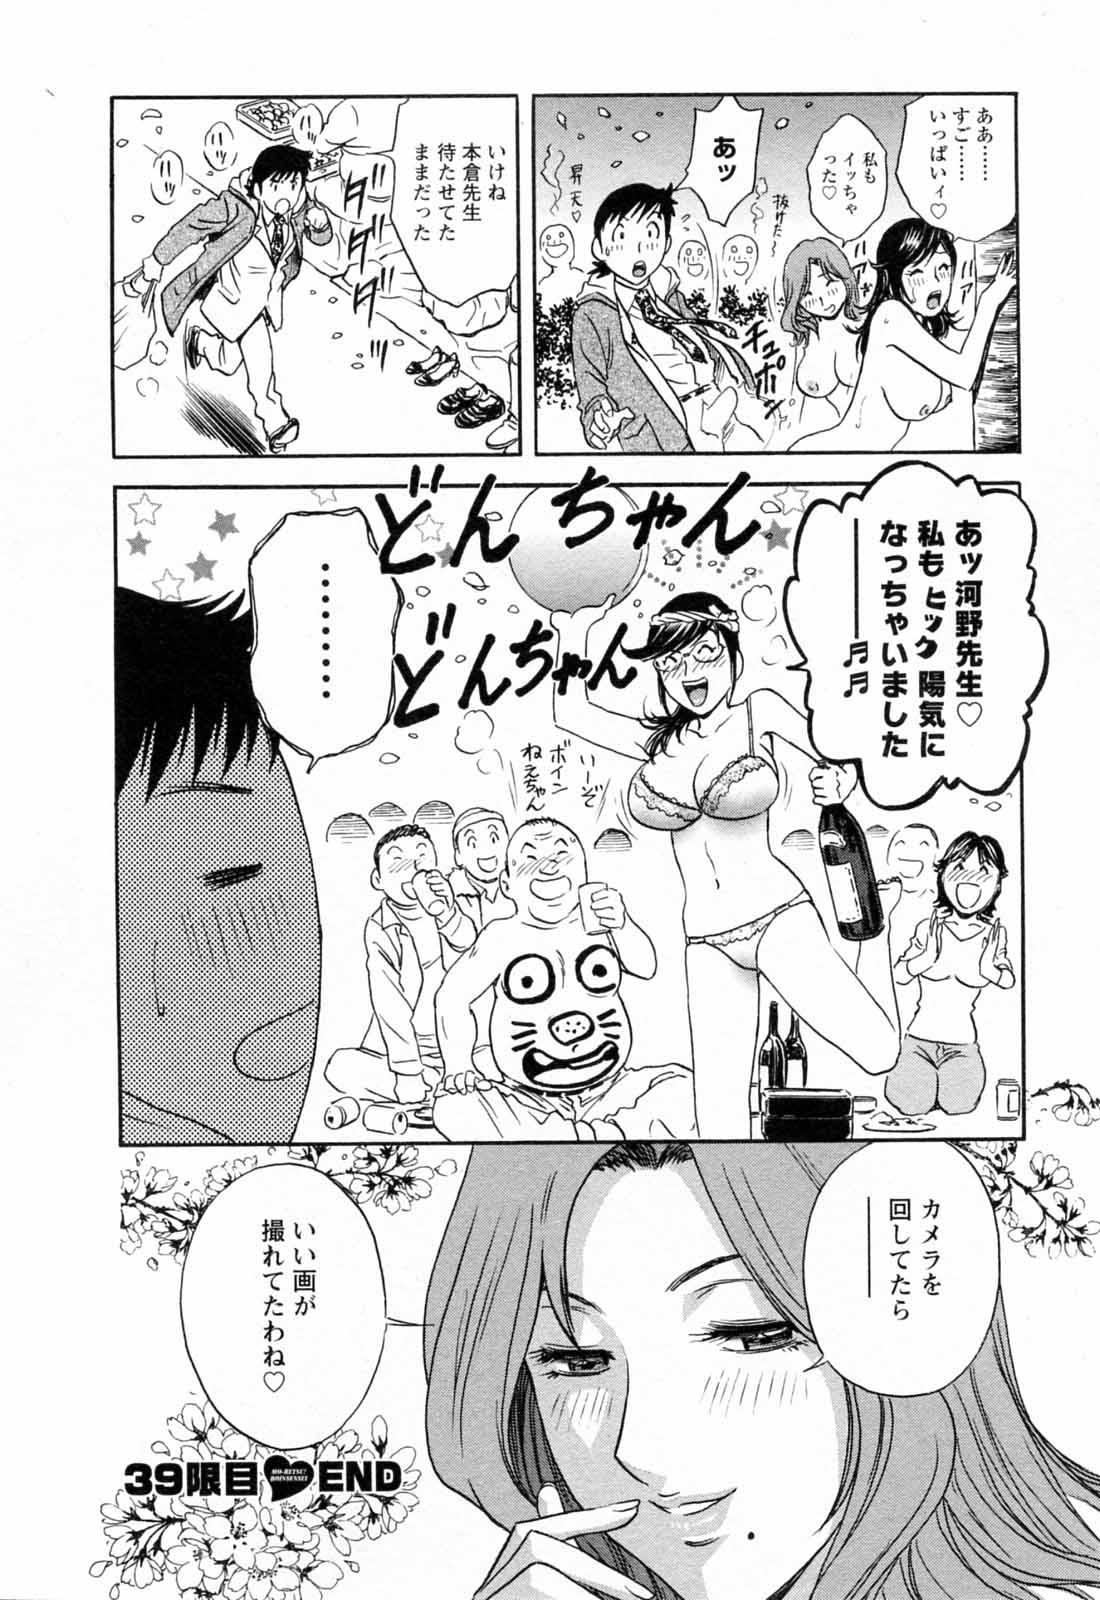 [Hidemaru] Mo-Retsu! Boin Sensei (Boing Boing Teacher) Vol.5 73